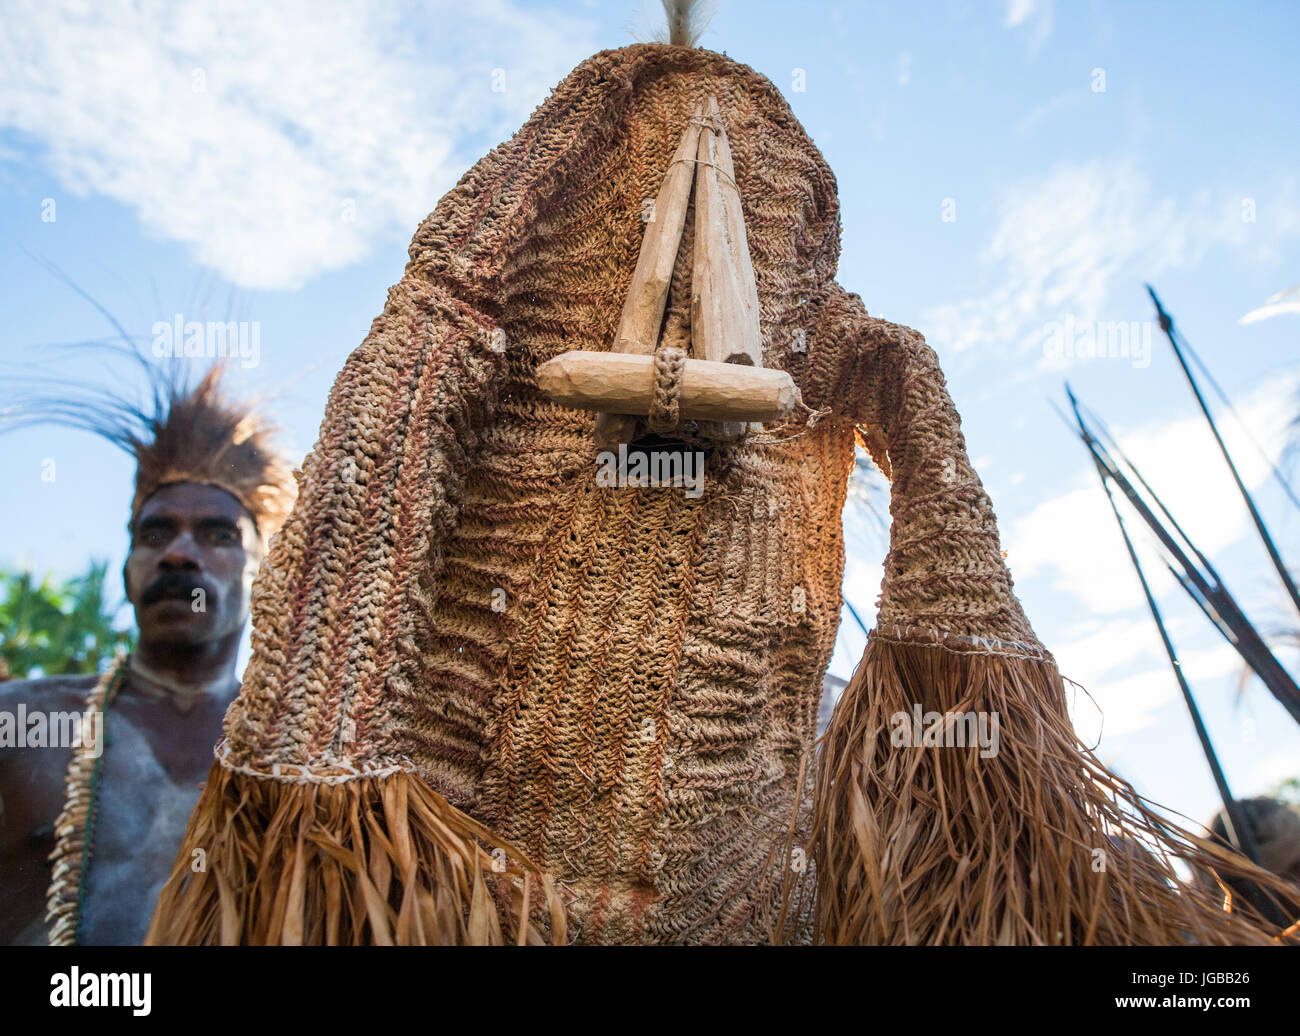 Indonesien, IRIAN JAYA, ASMAT Provinz, JOW Dorf - Juni 12: Die traditionelle Zeremonie des Ahnenkults. Asmat Stamm. Stockfoto